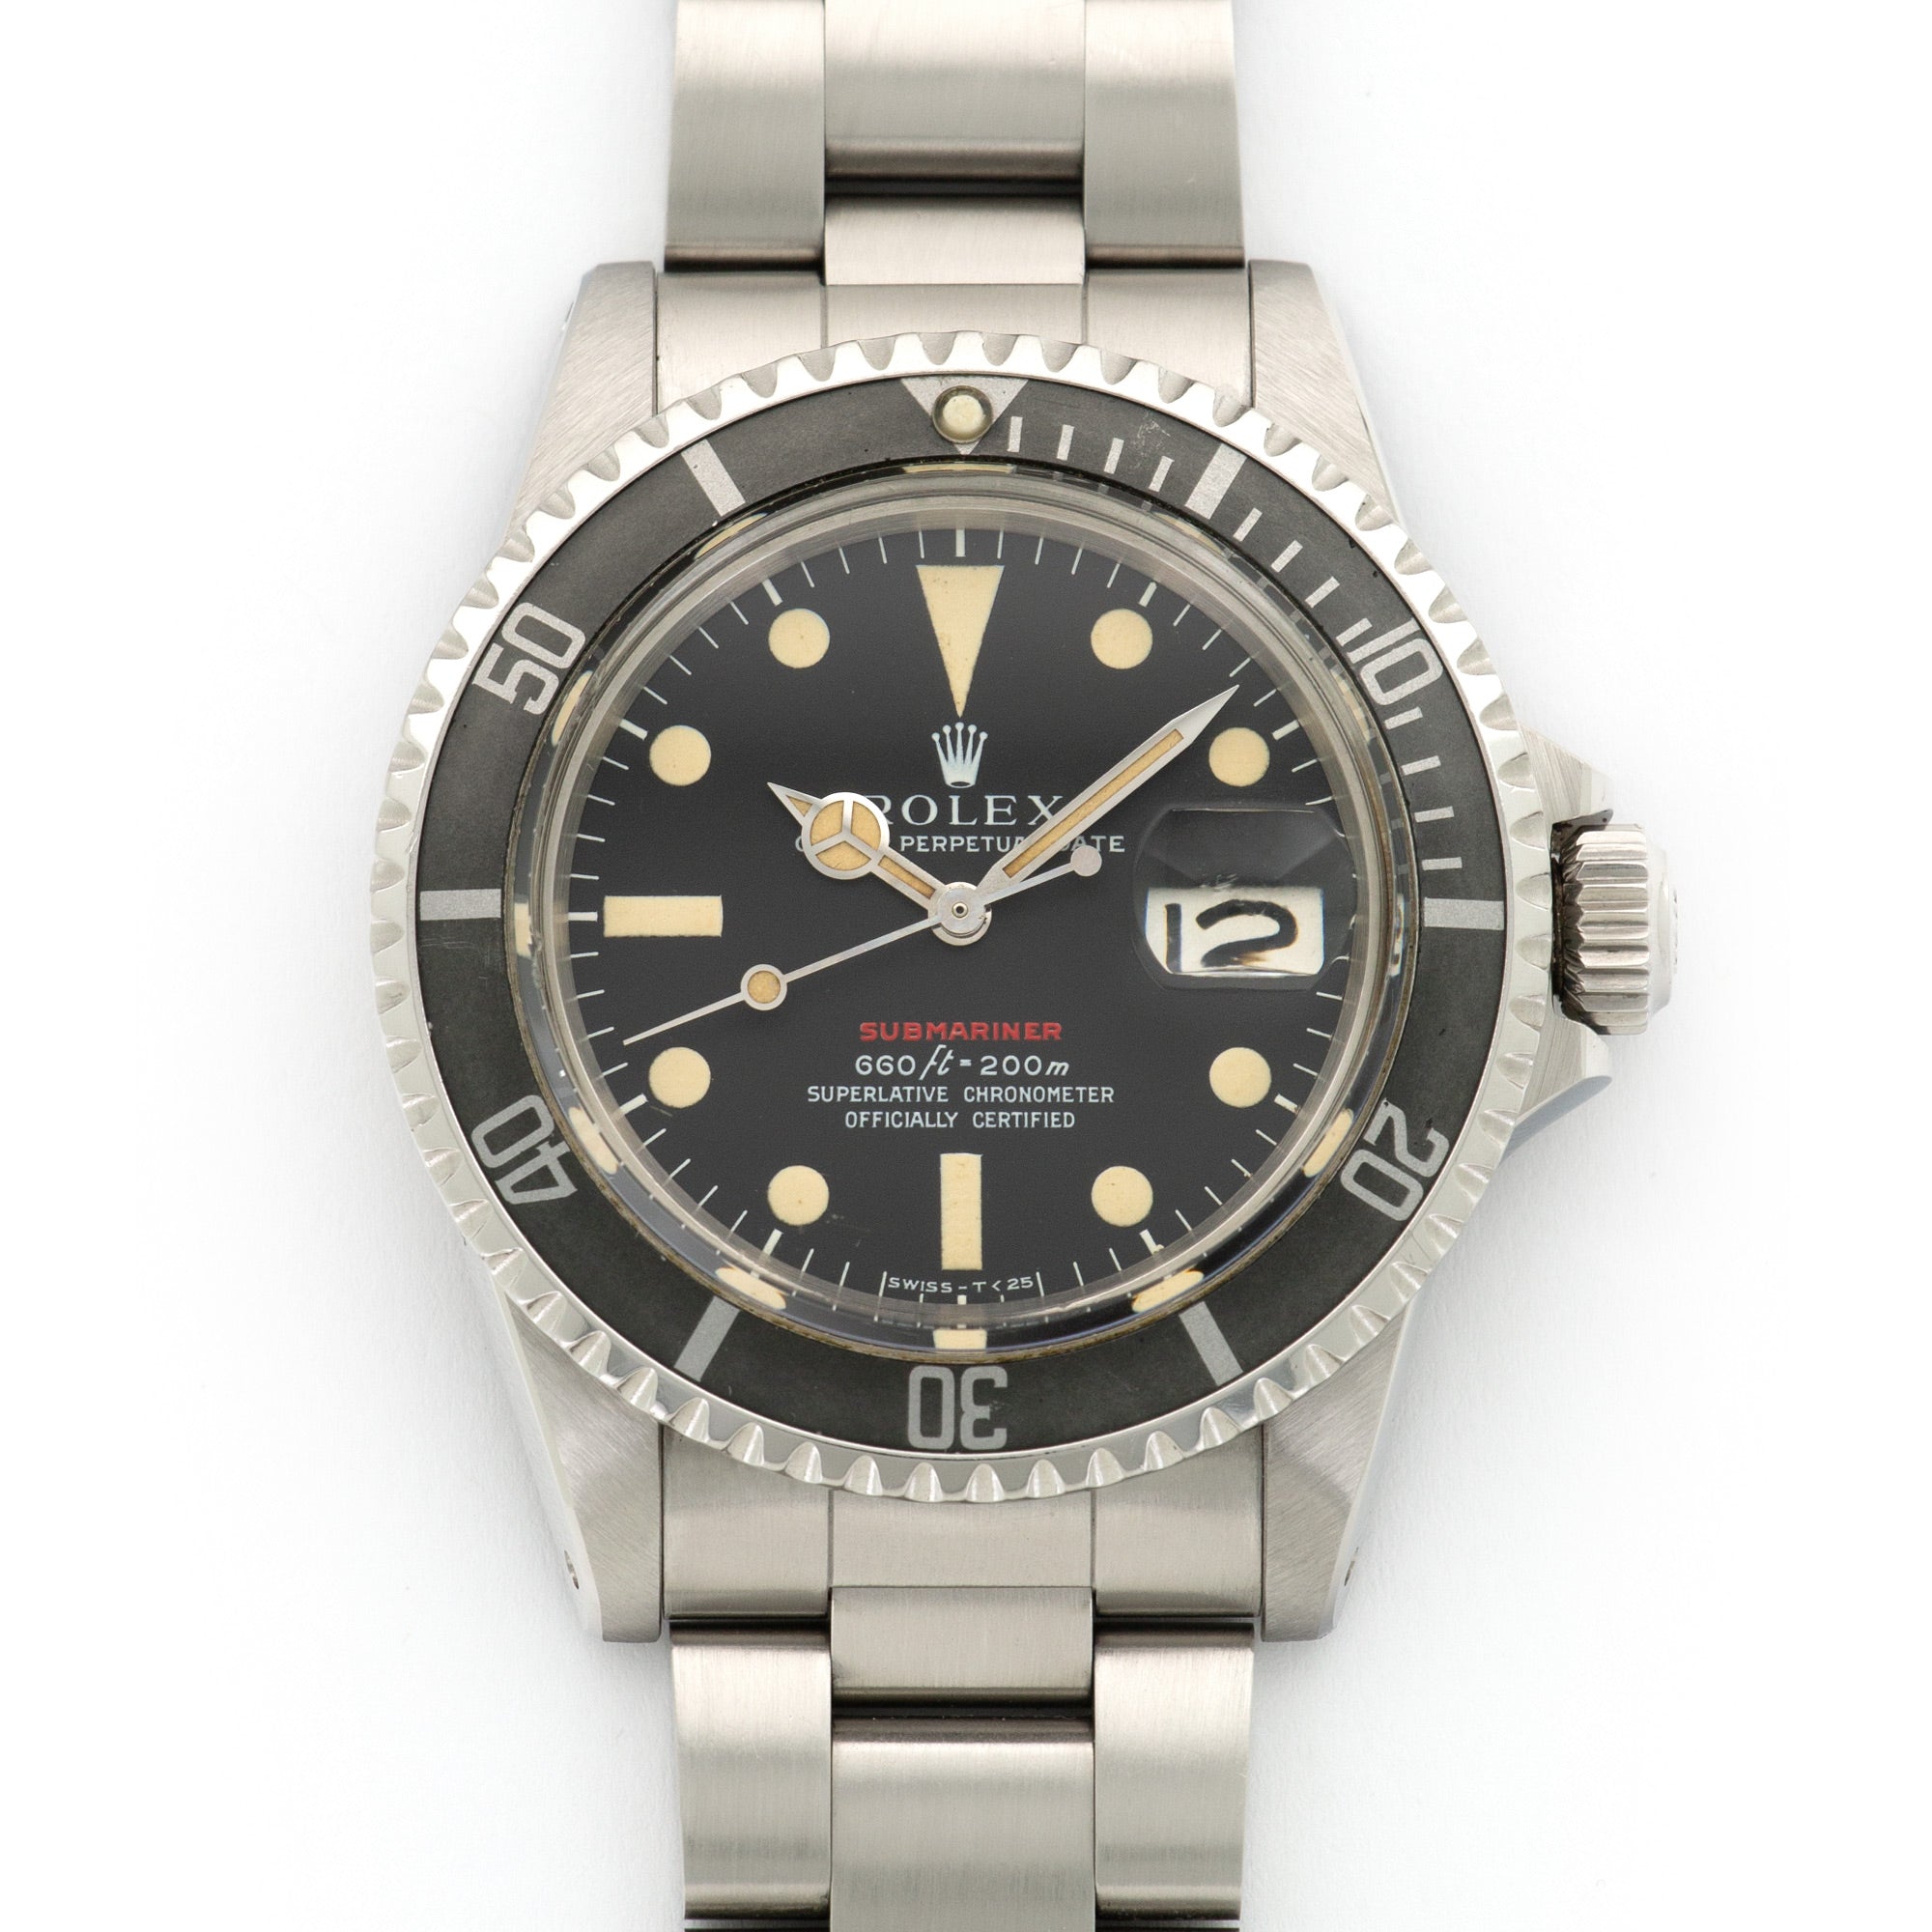 Rolex - Rolex Red Submariner Watch Ref. 1680, Circa 1972 - The Keystone Watches